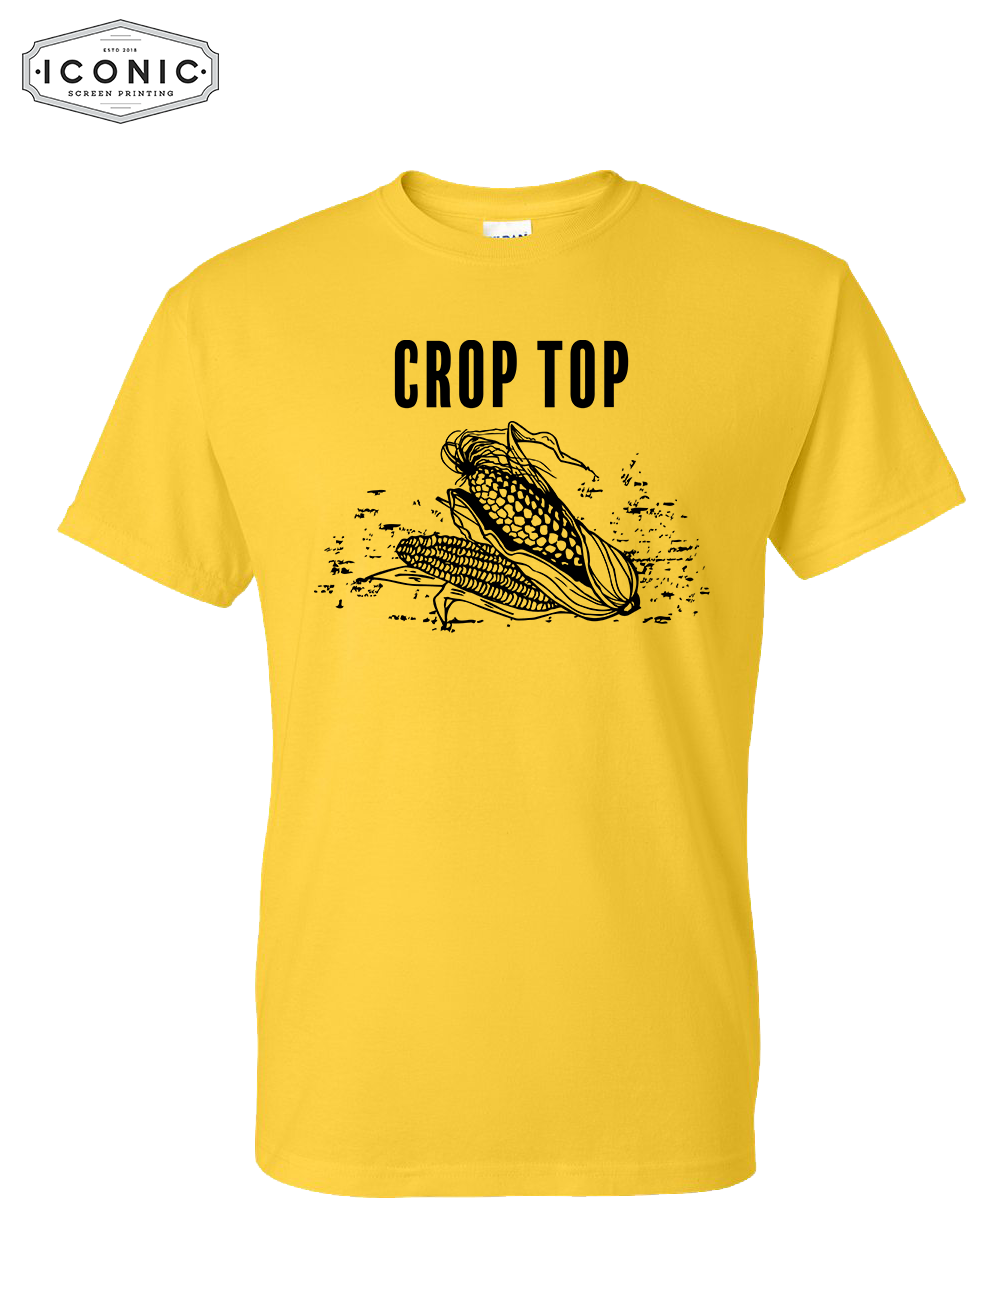 CROP TOP - DryBlend T-Shirt